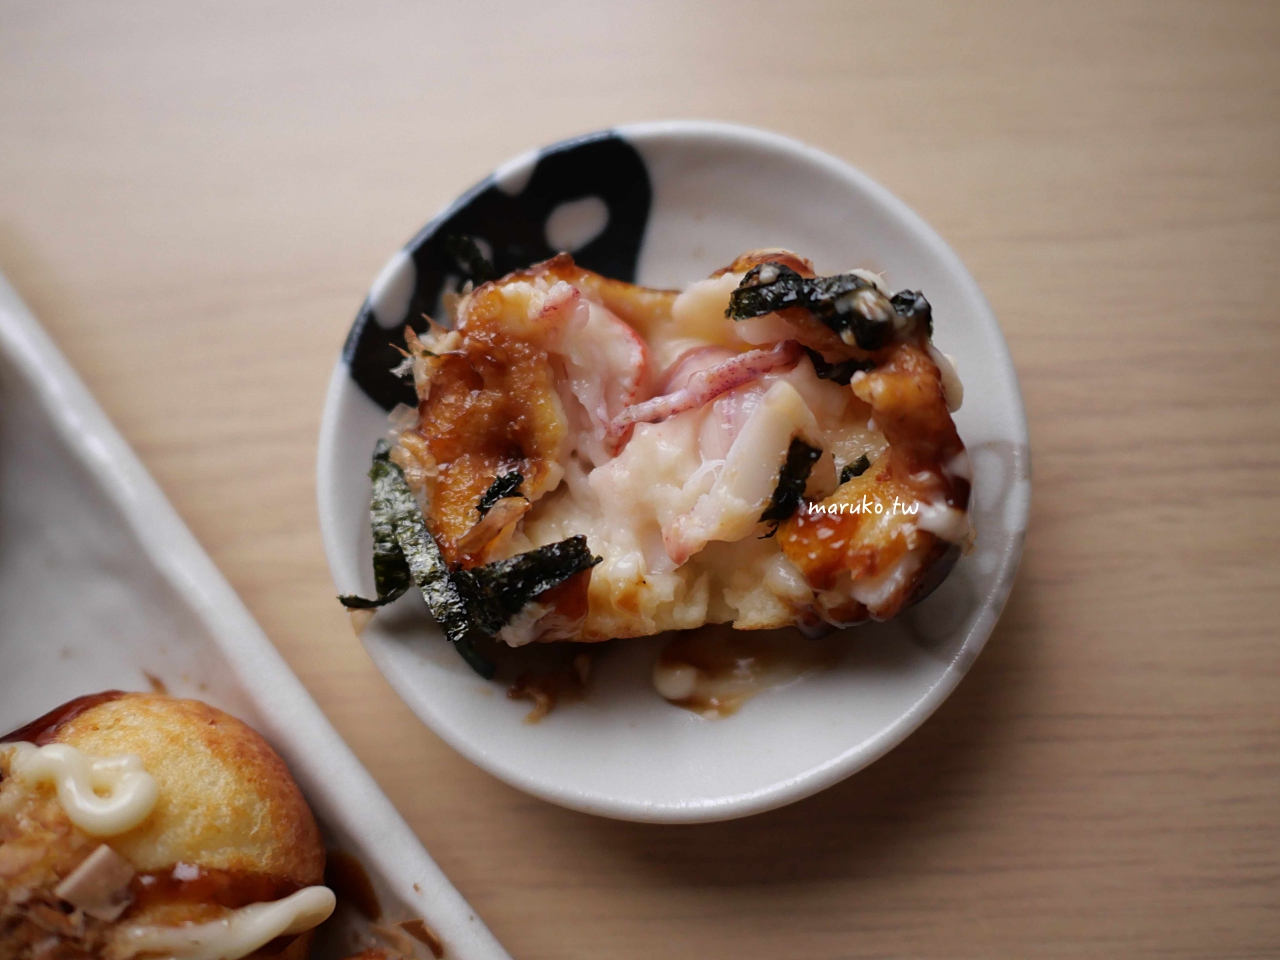 【食譜】章魚燒 簡單四種材料就能做章魚燒麵糊做法分享 @Maruko與美食有個約會